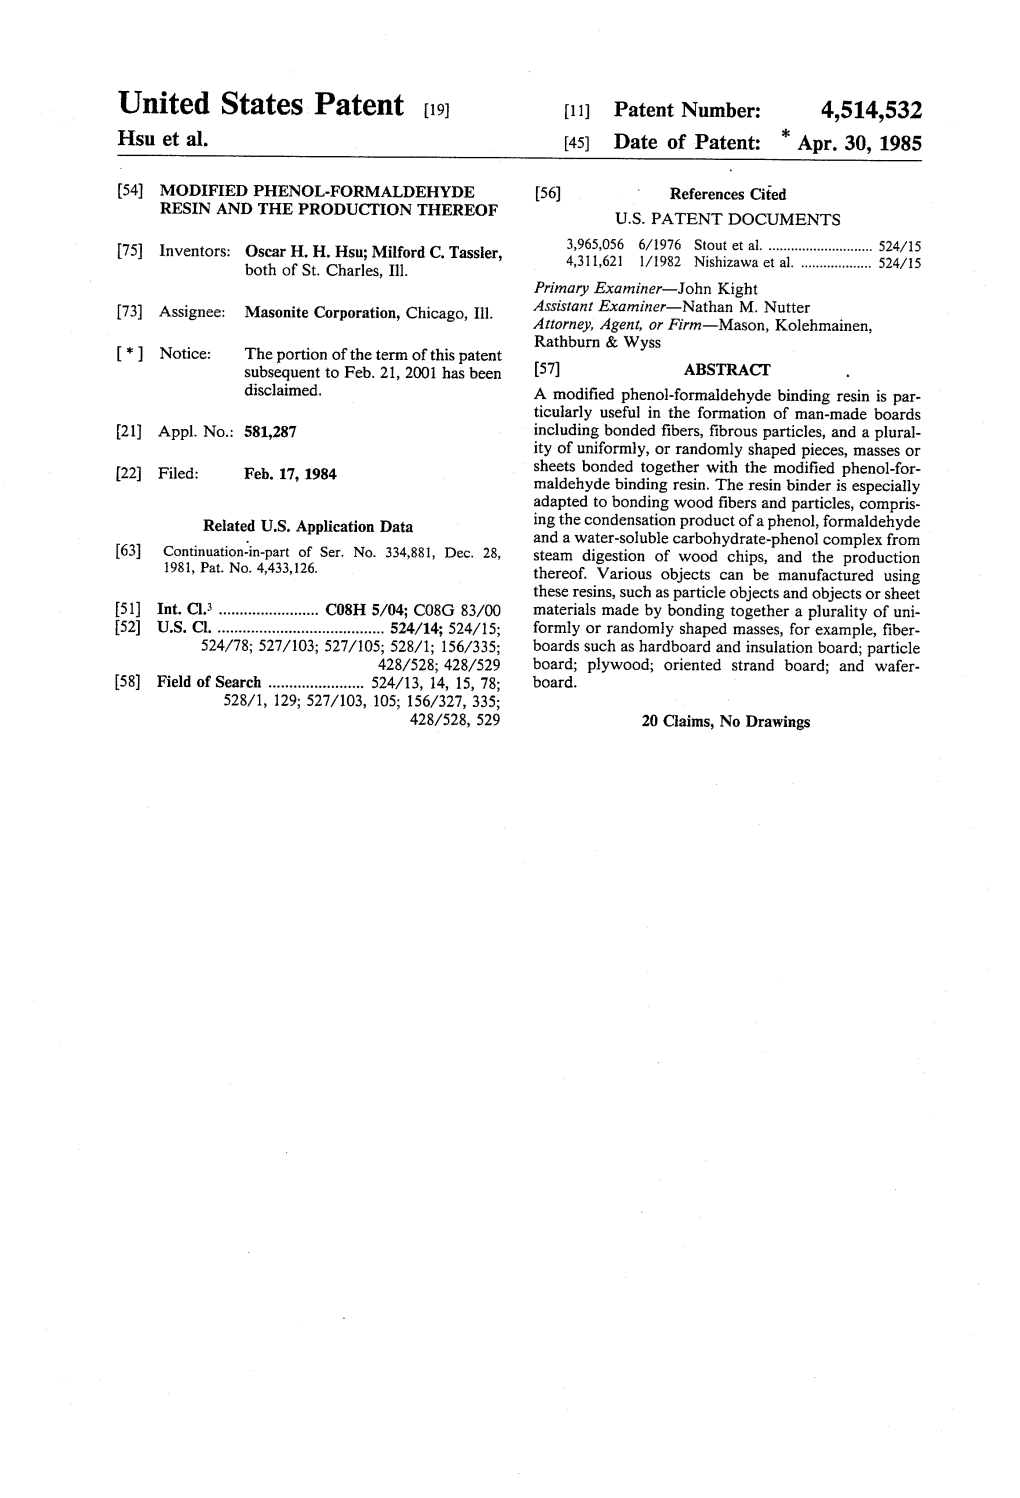 United States Patent (19) 11 Patent Number: 4,514,532 Hsu Et Al